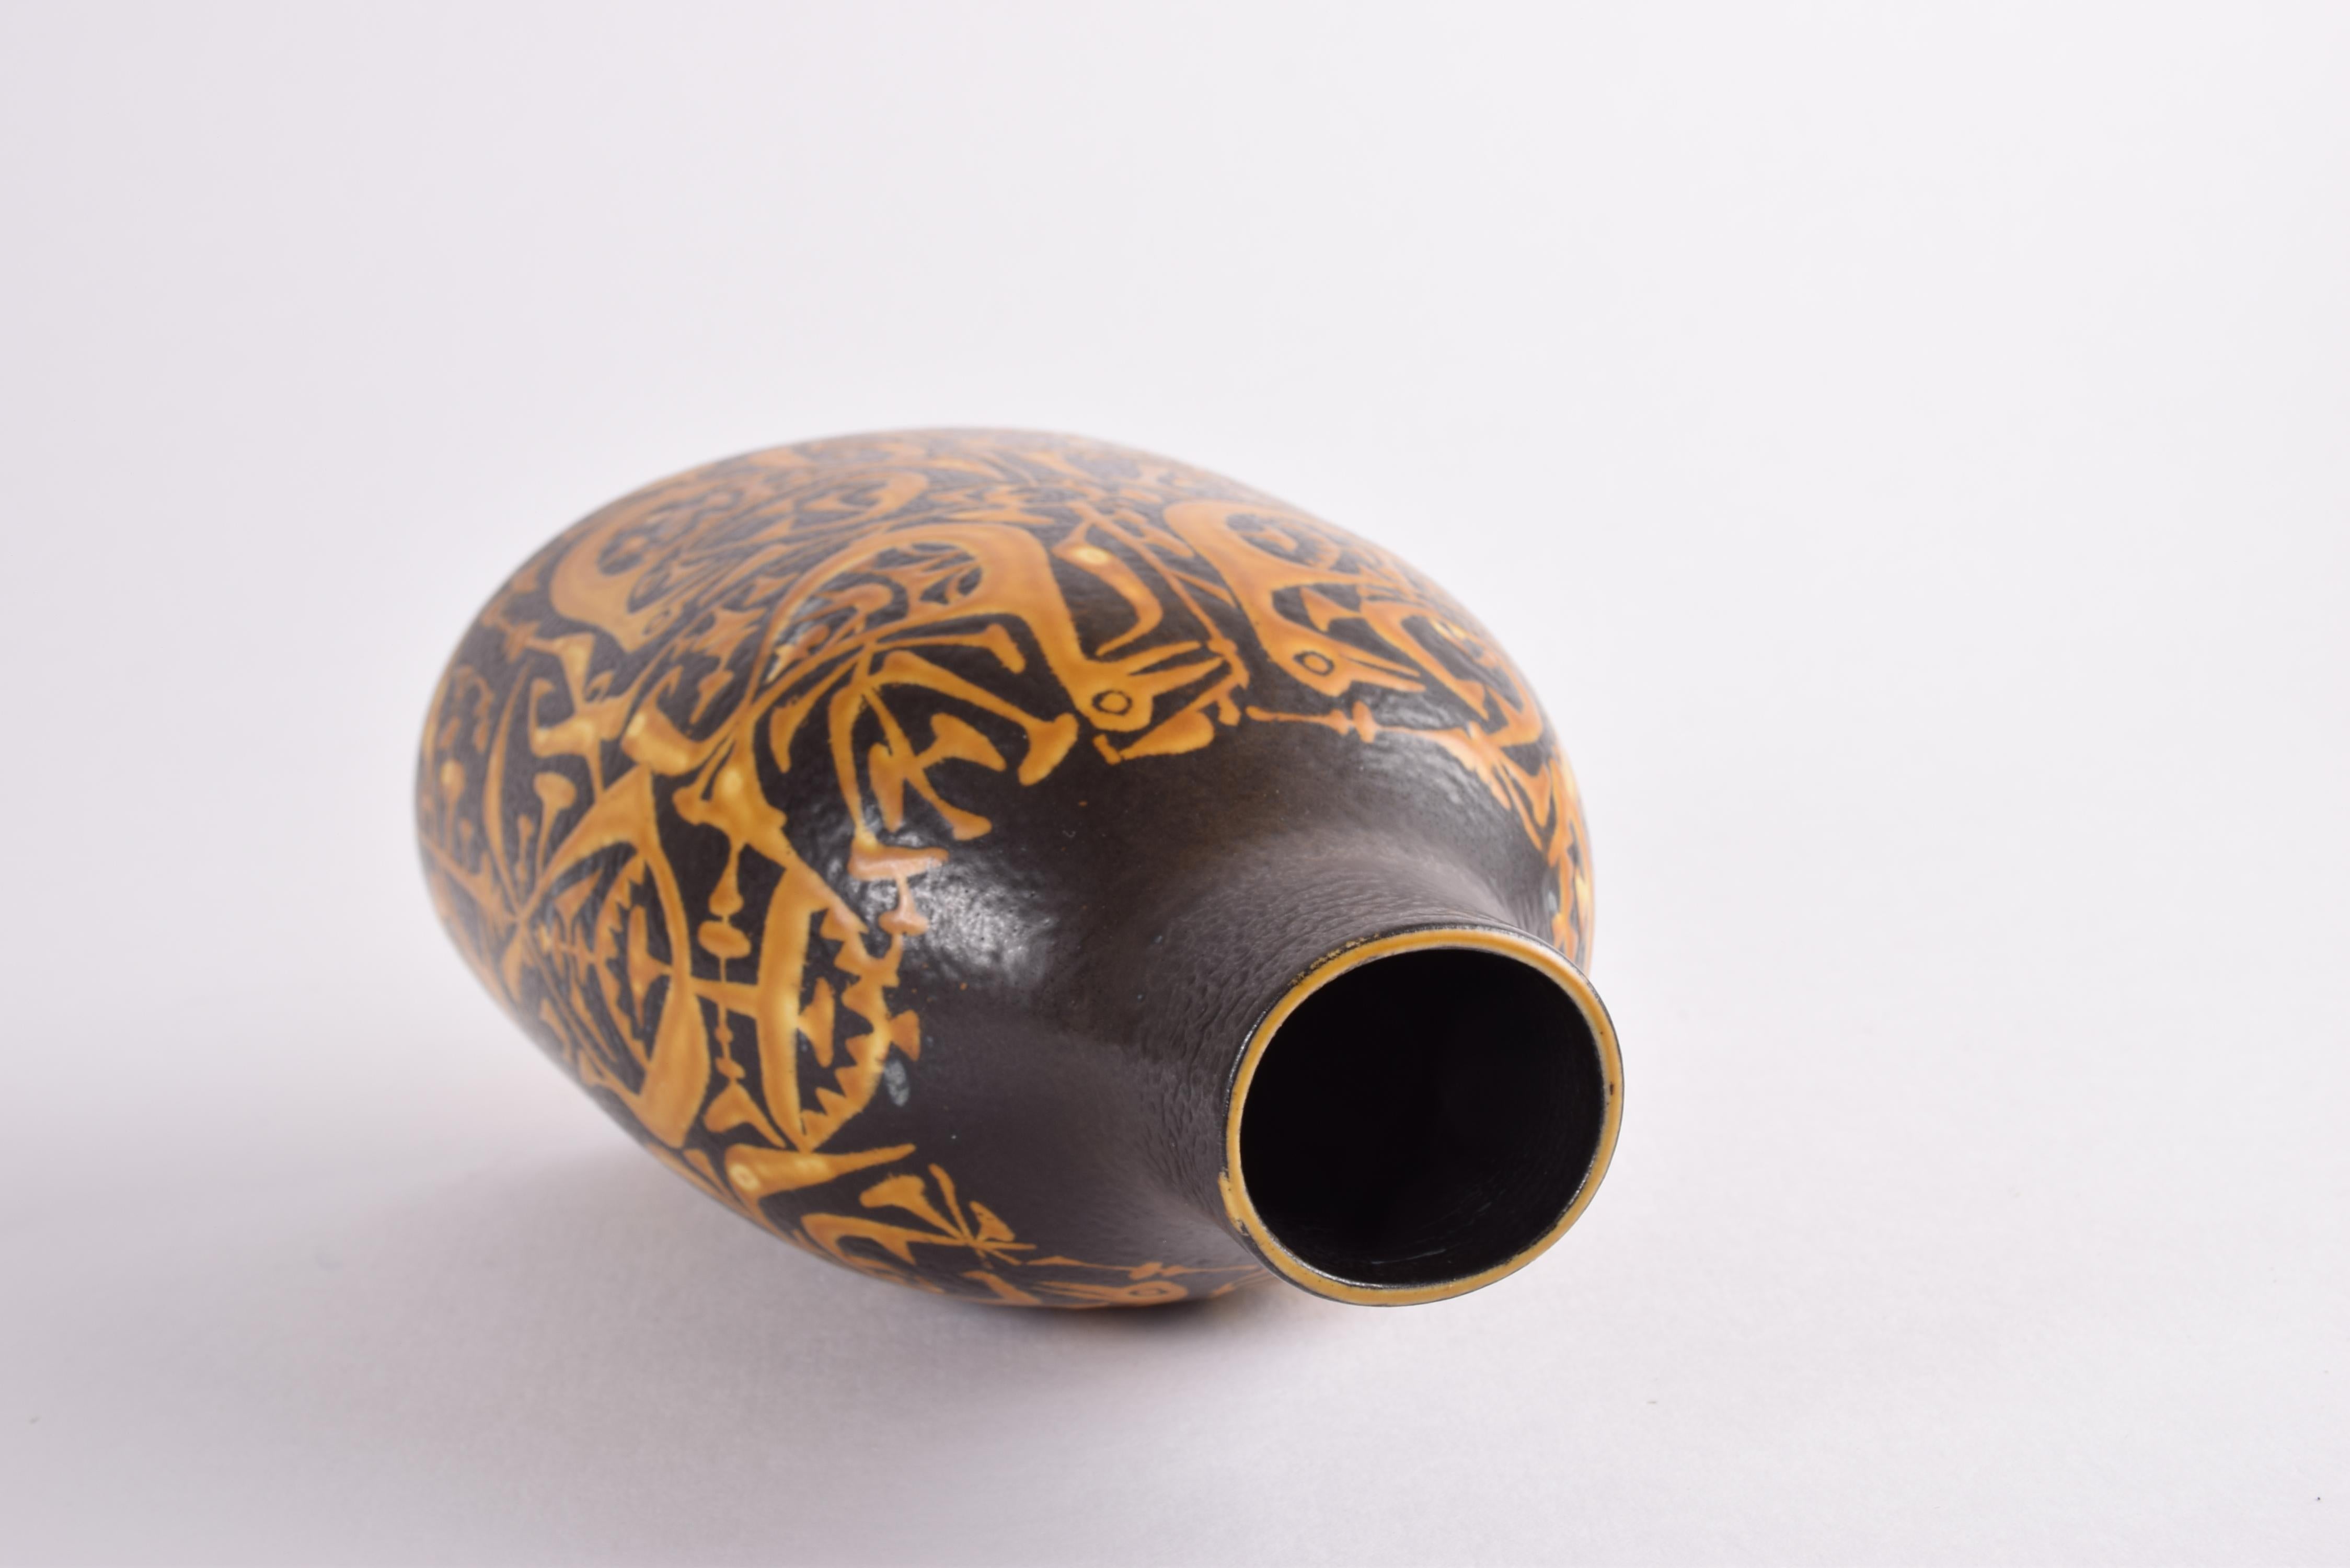 Ceramic Nils Thorsson Royal Copenhagen Baca Vase Bird Motif Black Yellow, Danish 1970s